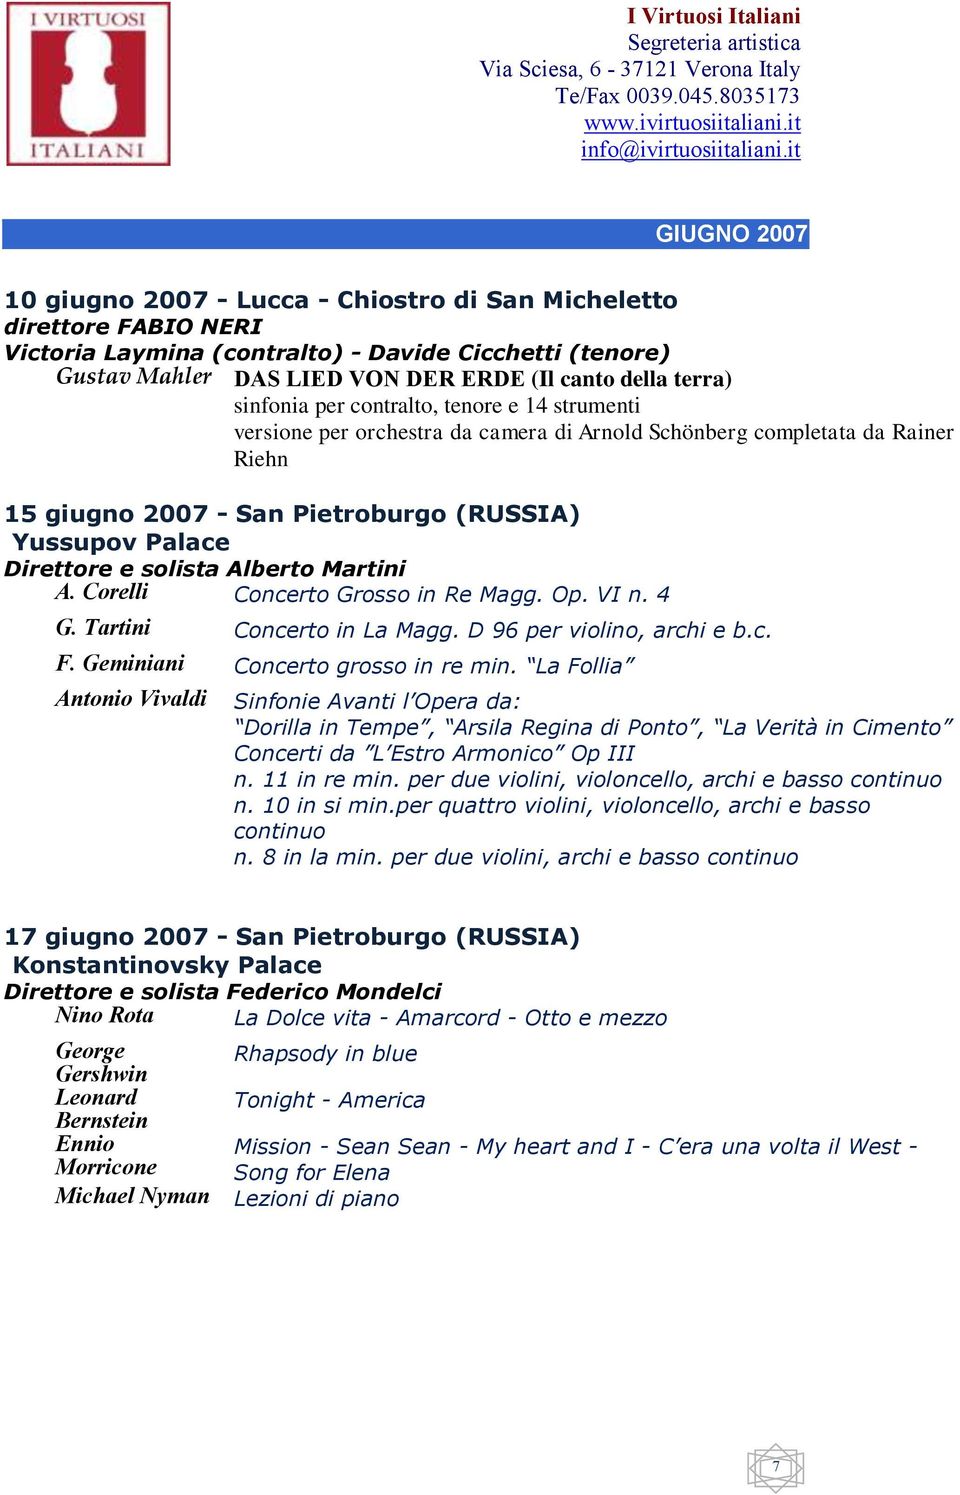 Direttore e solista Alberto Martini A. Corelli Concerto Grosso in Re Magg. Op. VI n. 4 G. Tartini Concerto in La Magg. D 96 per violino, archi e b.c. F. Geminiani Concerto grosso in re min.